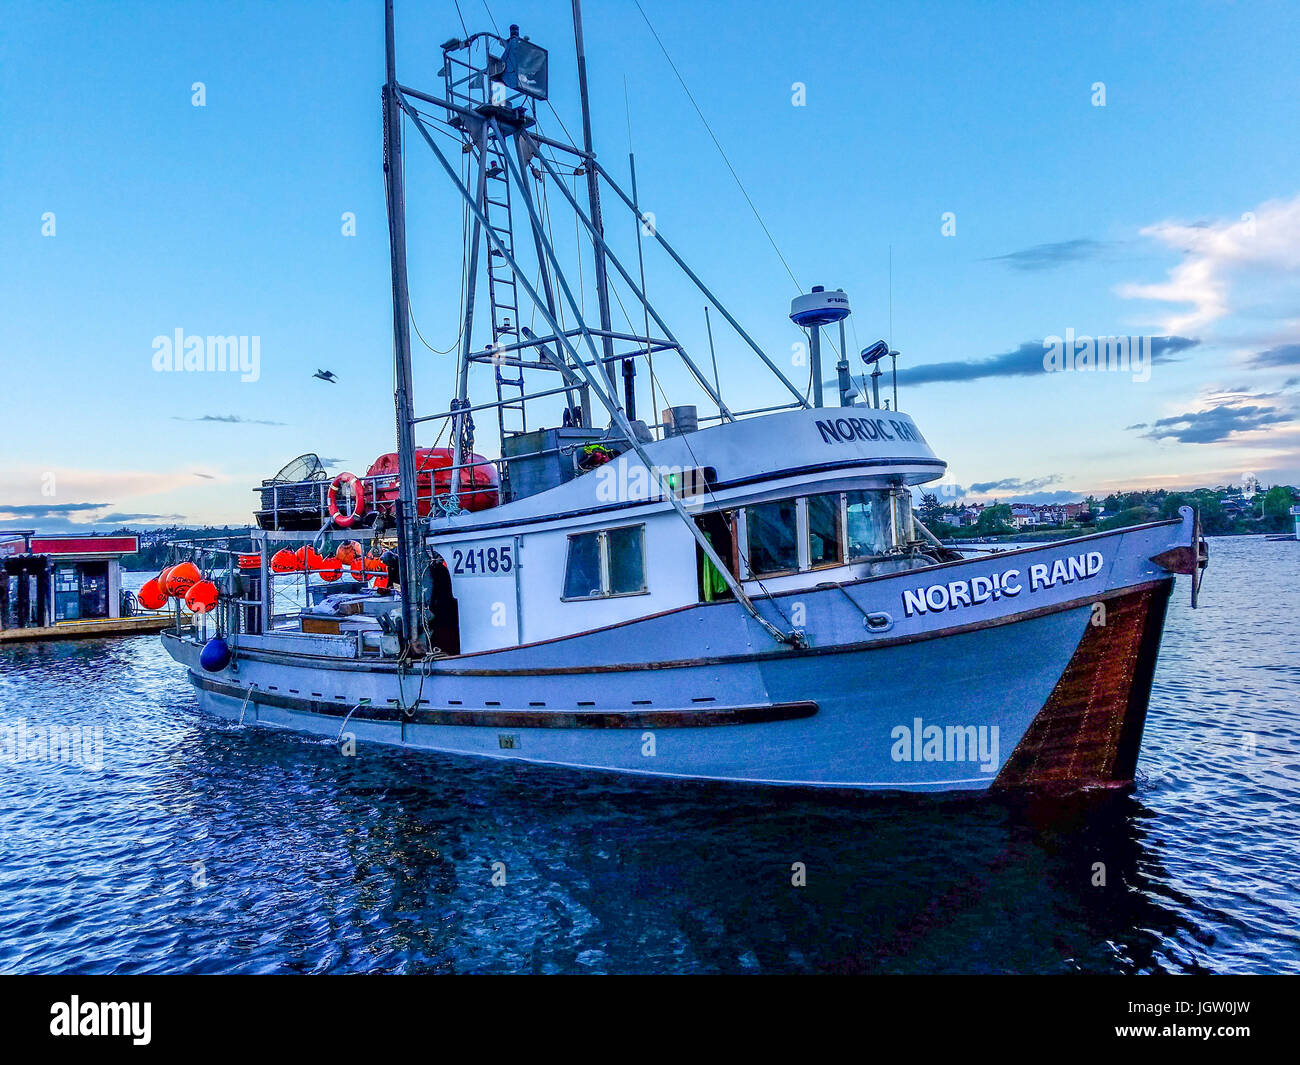 Bateau de pêche commerciale Rand nordique au large de l'île de Vancouver, BC, Canada, la pêche de crevettes (comme la crevette, mais de plus grande taille). Banque D'Images